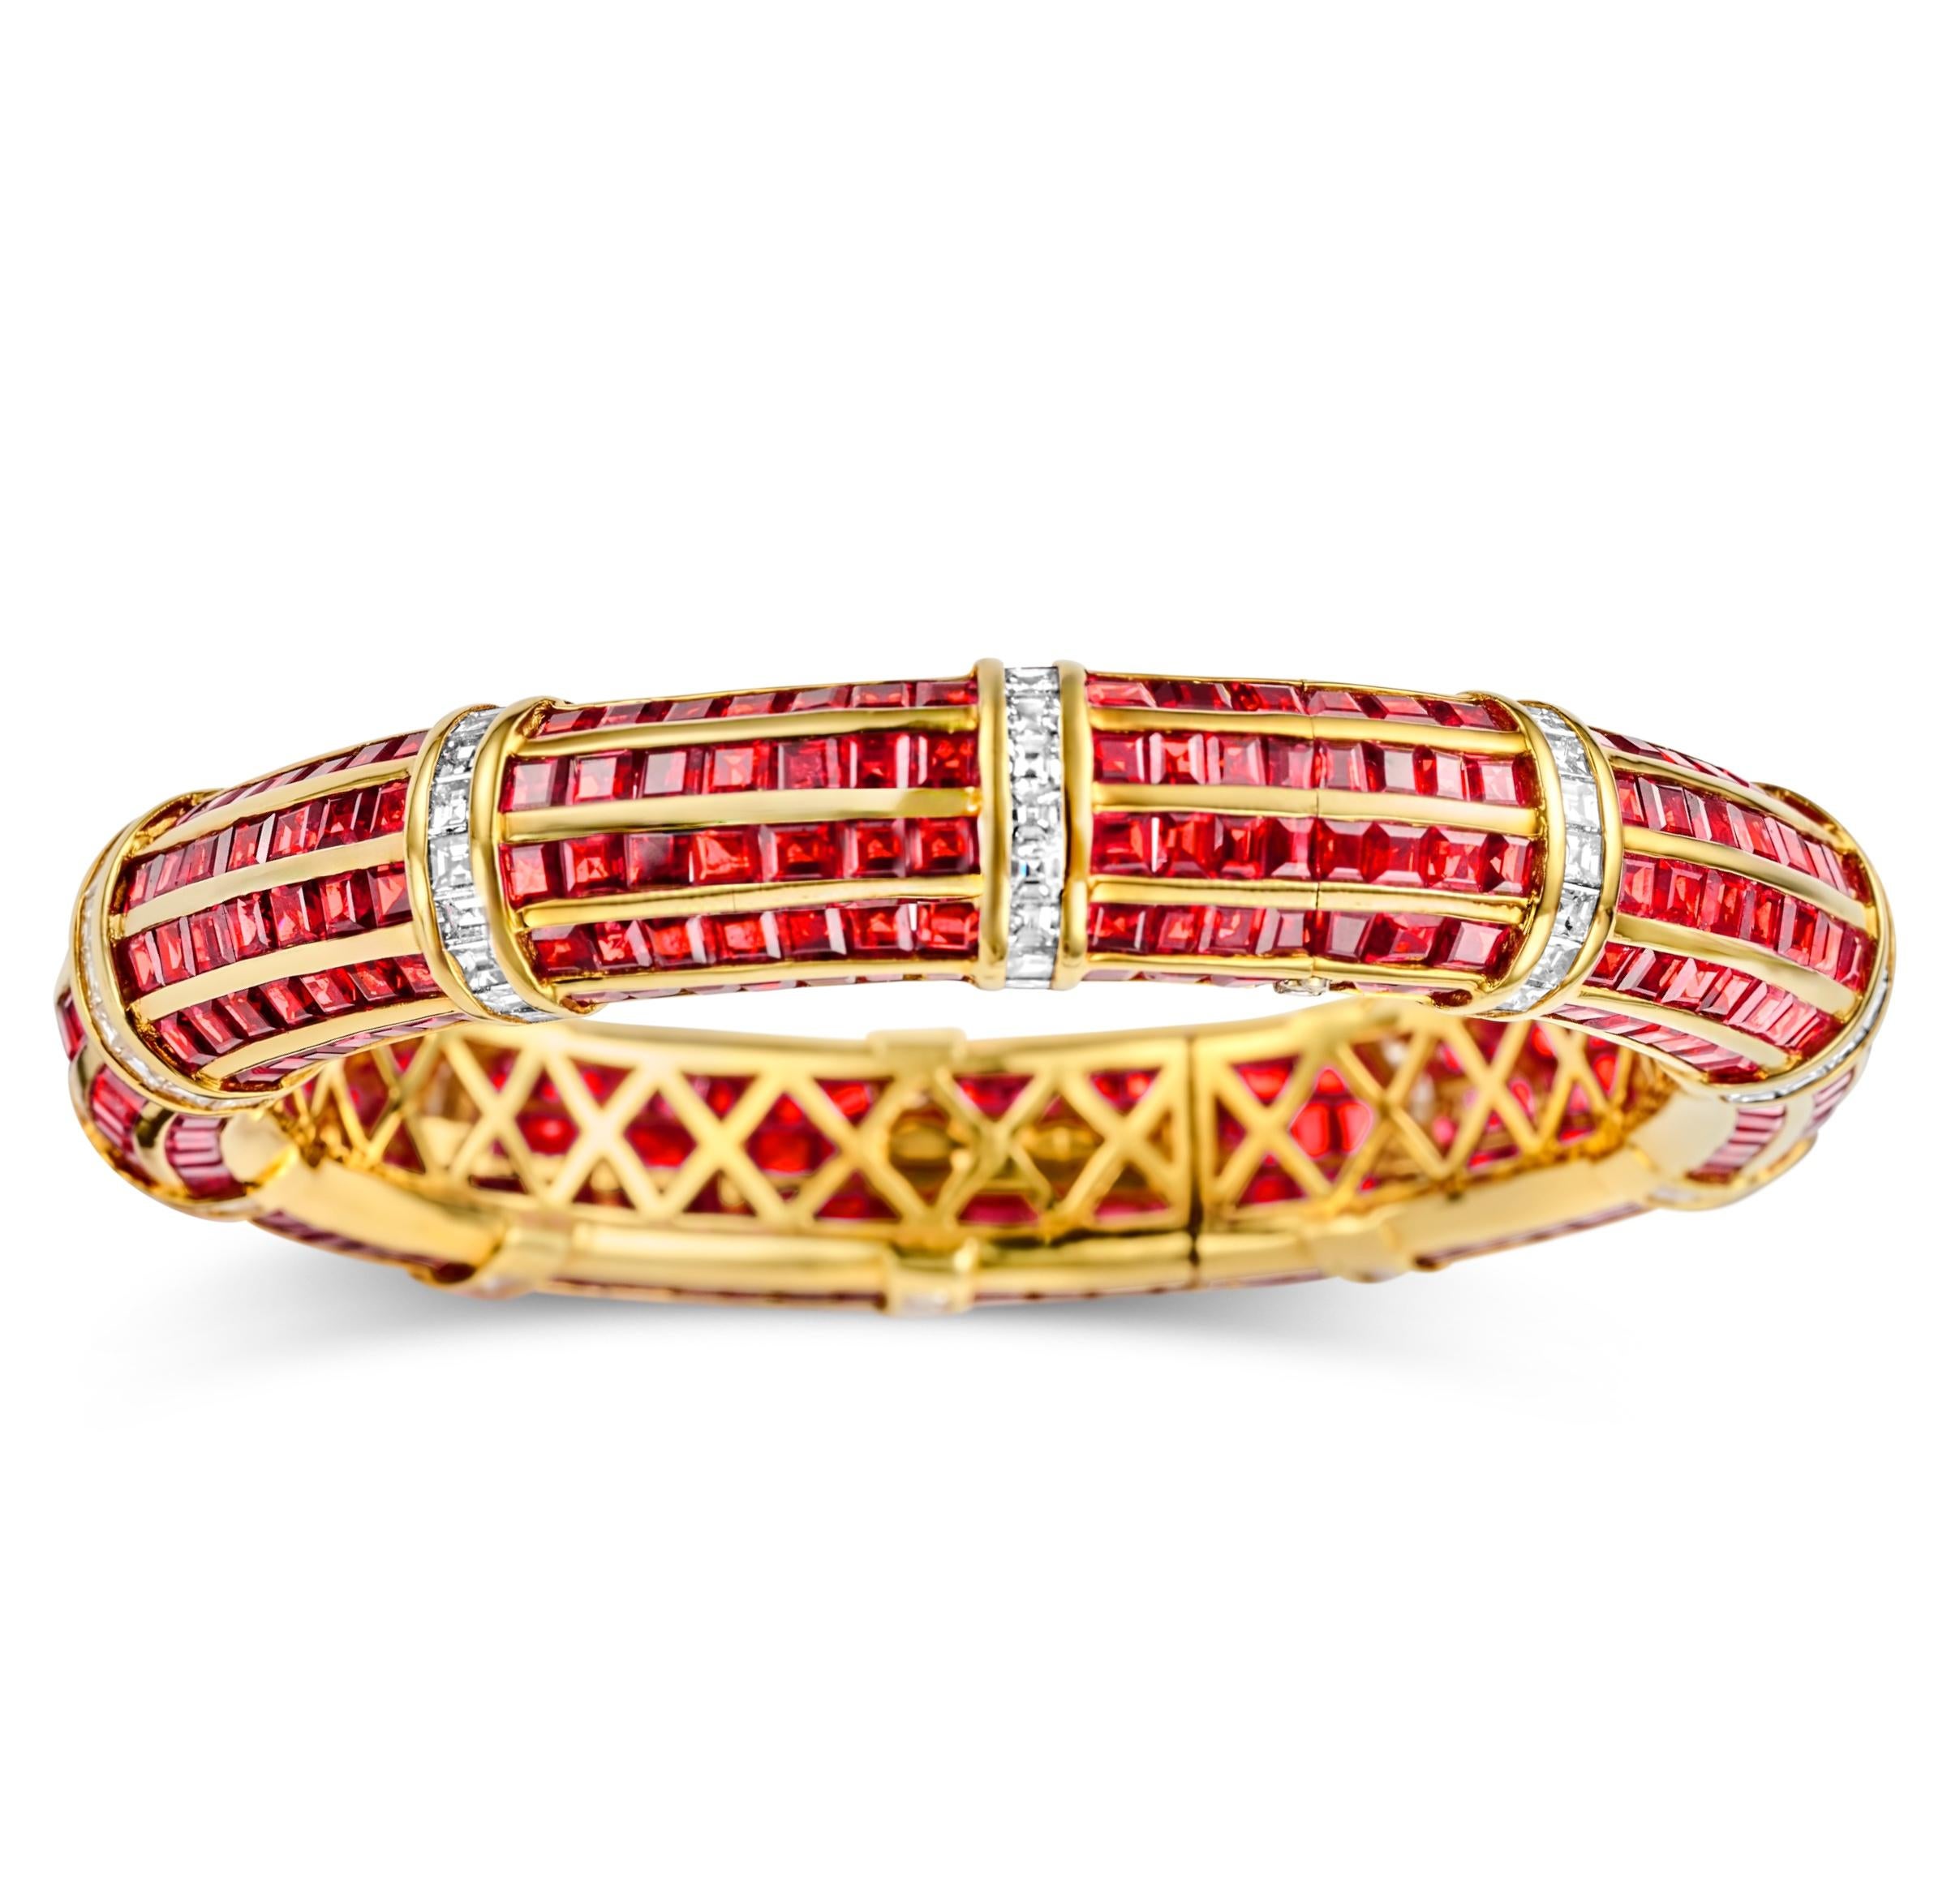 Magnifique or jaune 18kt  Bracelet avec rubis rouges et diamants carrés de 5ct de taille émeraude du Domaine Sa Majesté le Sultan d'Oman Qaboos Bin Said

Rubis : 420 rubis : Ca. 30 Ct

Diamants : Diamants de taille carrée, au total environ 5 ct.